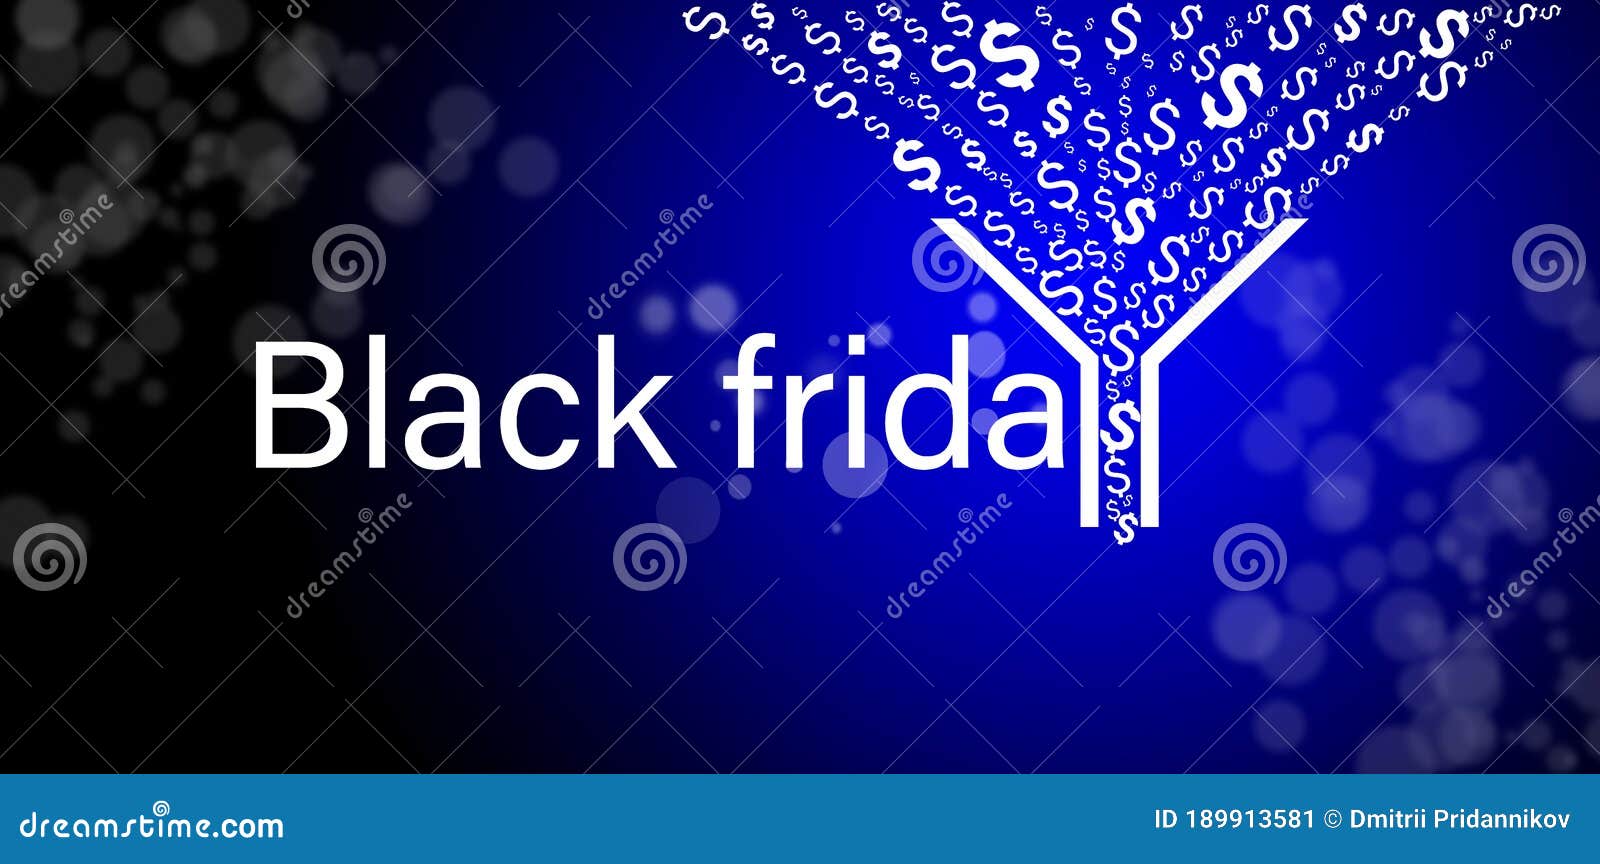 Clickfunnels Black Friday Deals 2020 - 50% Coupon